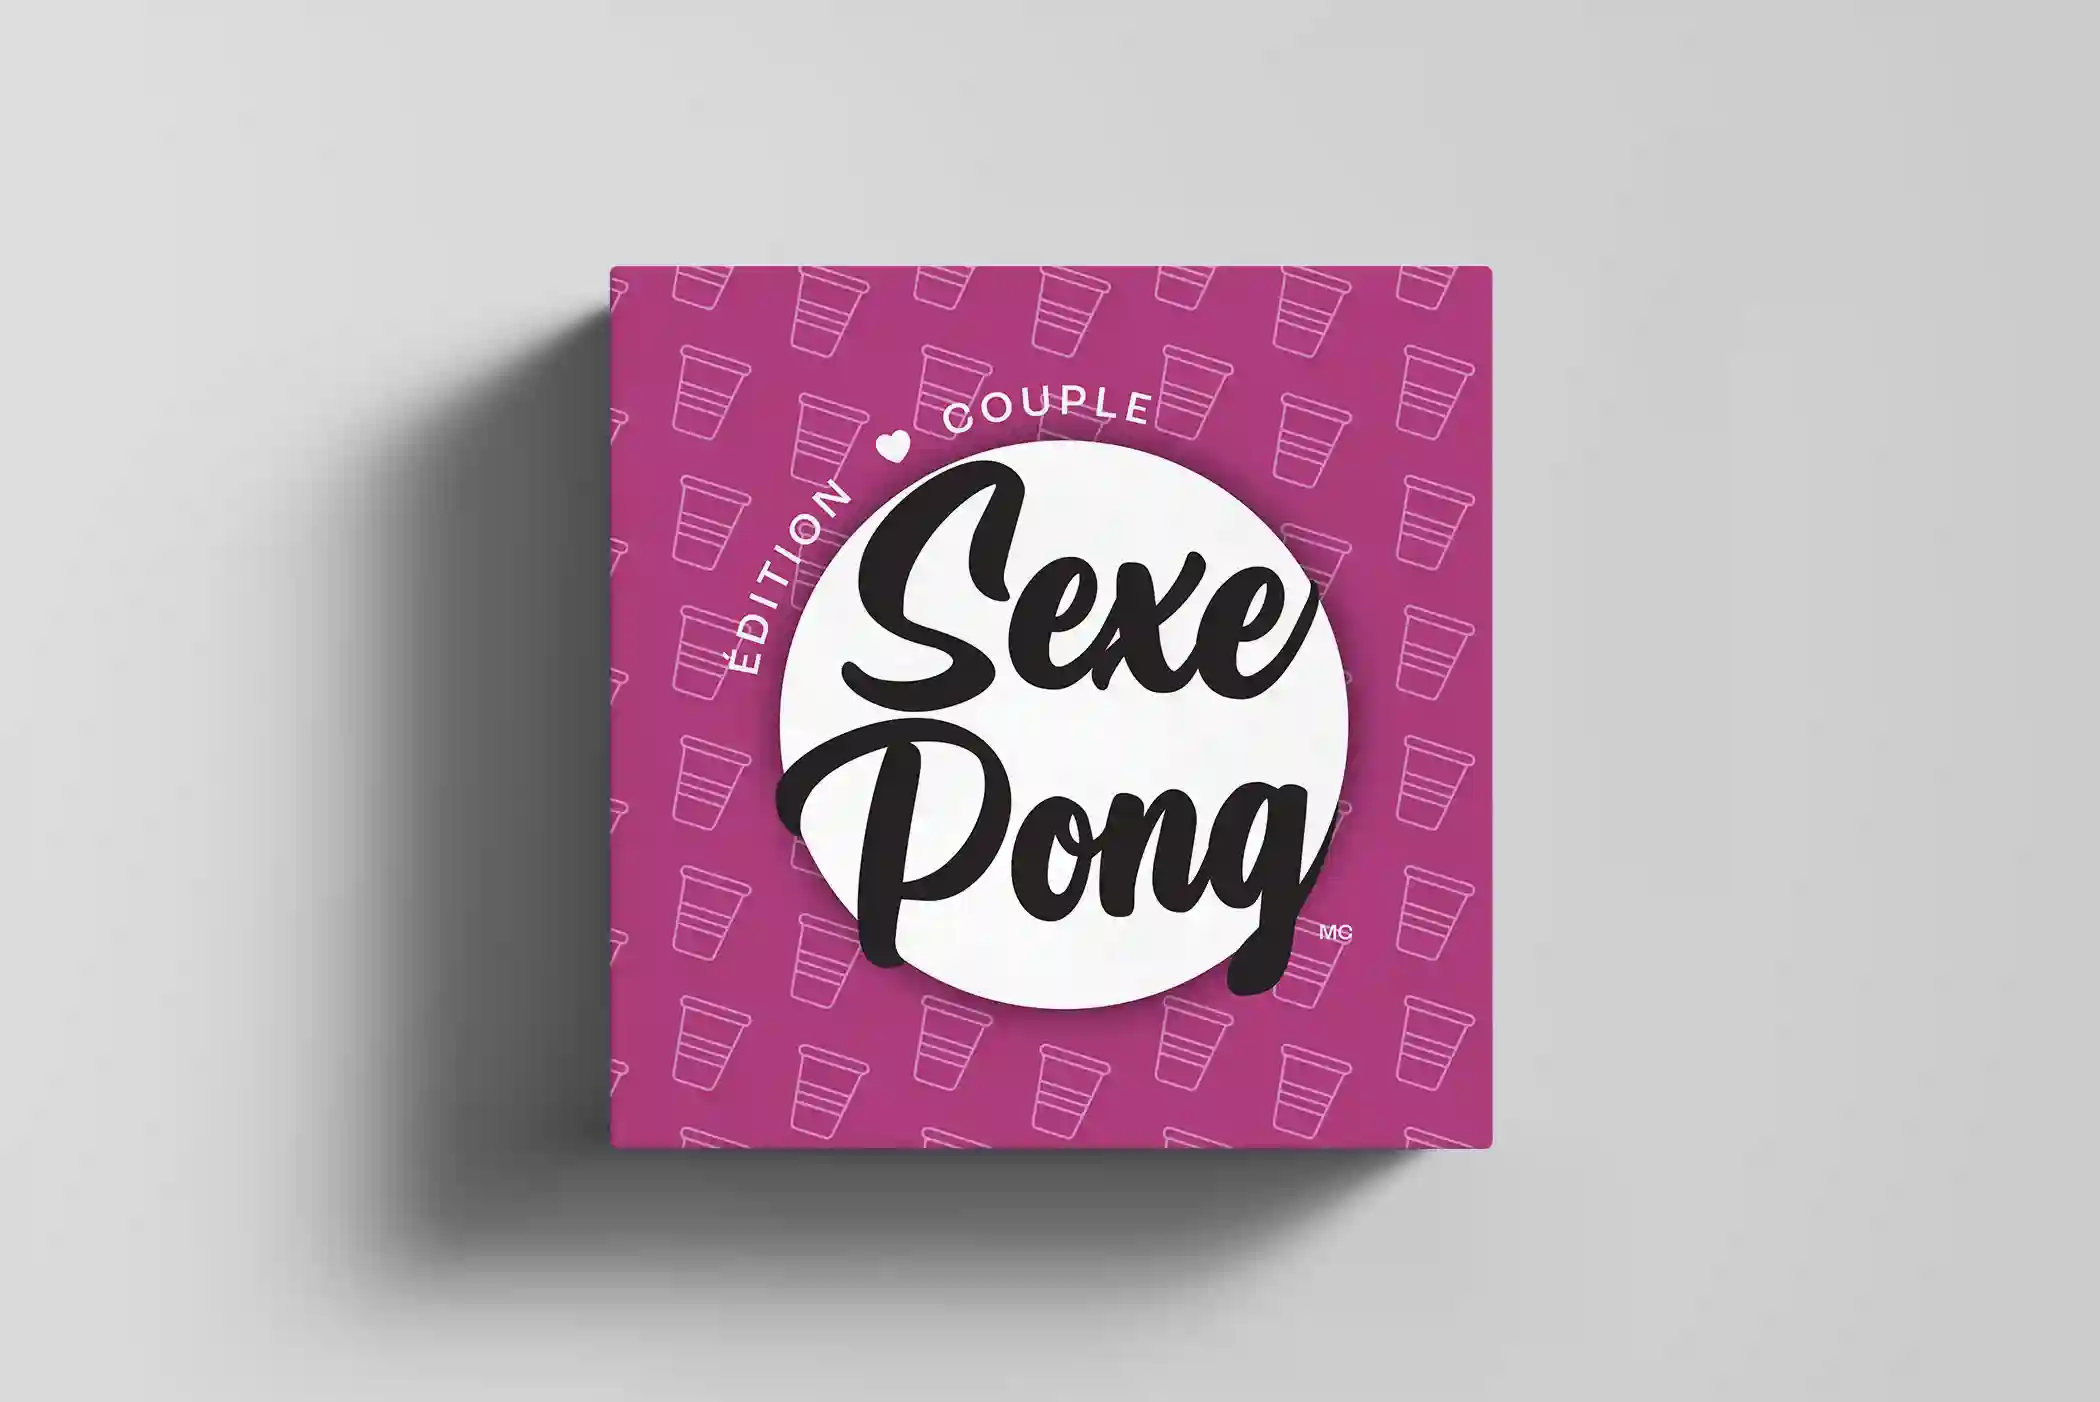 Voici une photo de la boîte avant du jeu Sexe Pong - édition couple. On peut y voir le logo Sexe Pong ainsi que la boîte rose avec des verres qui se répètent.